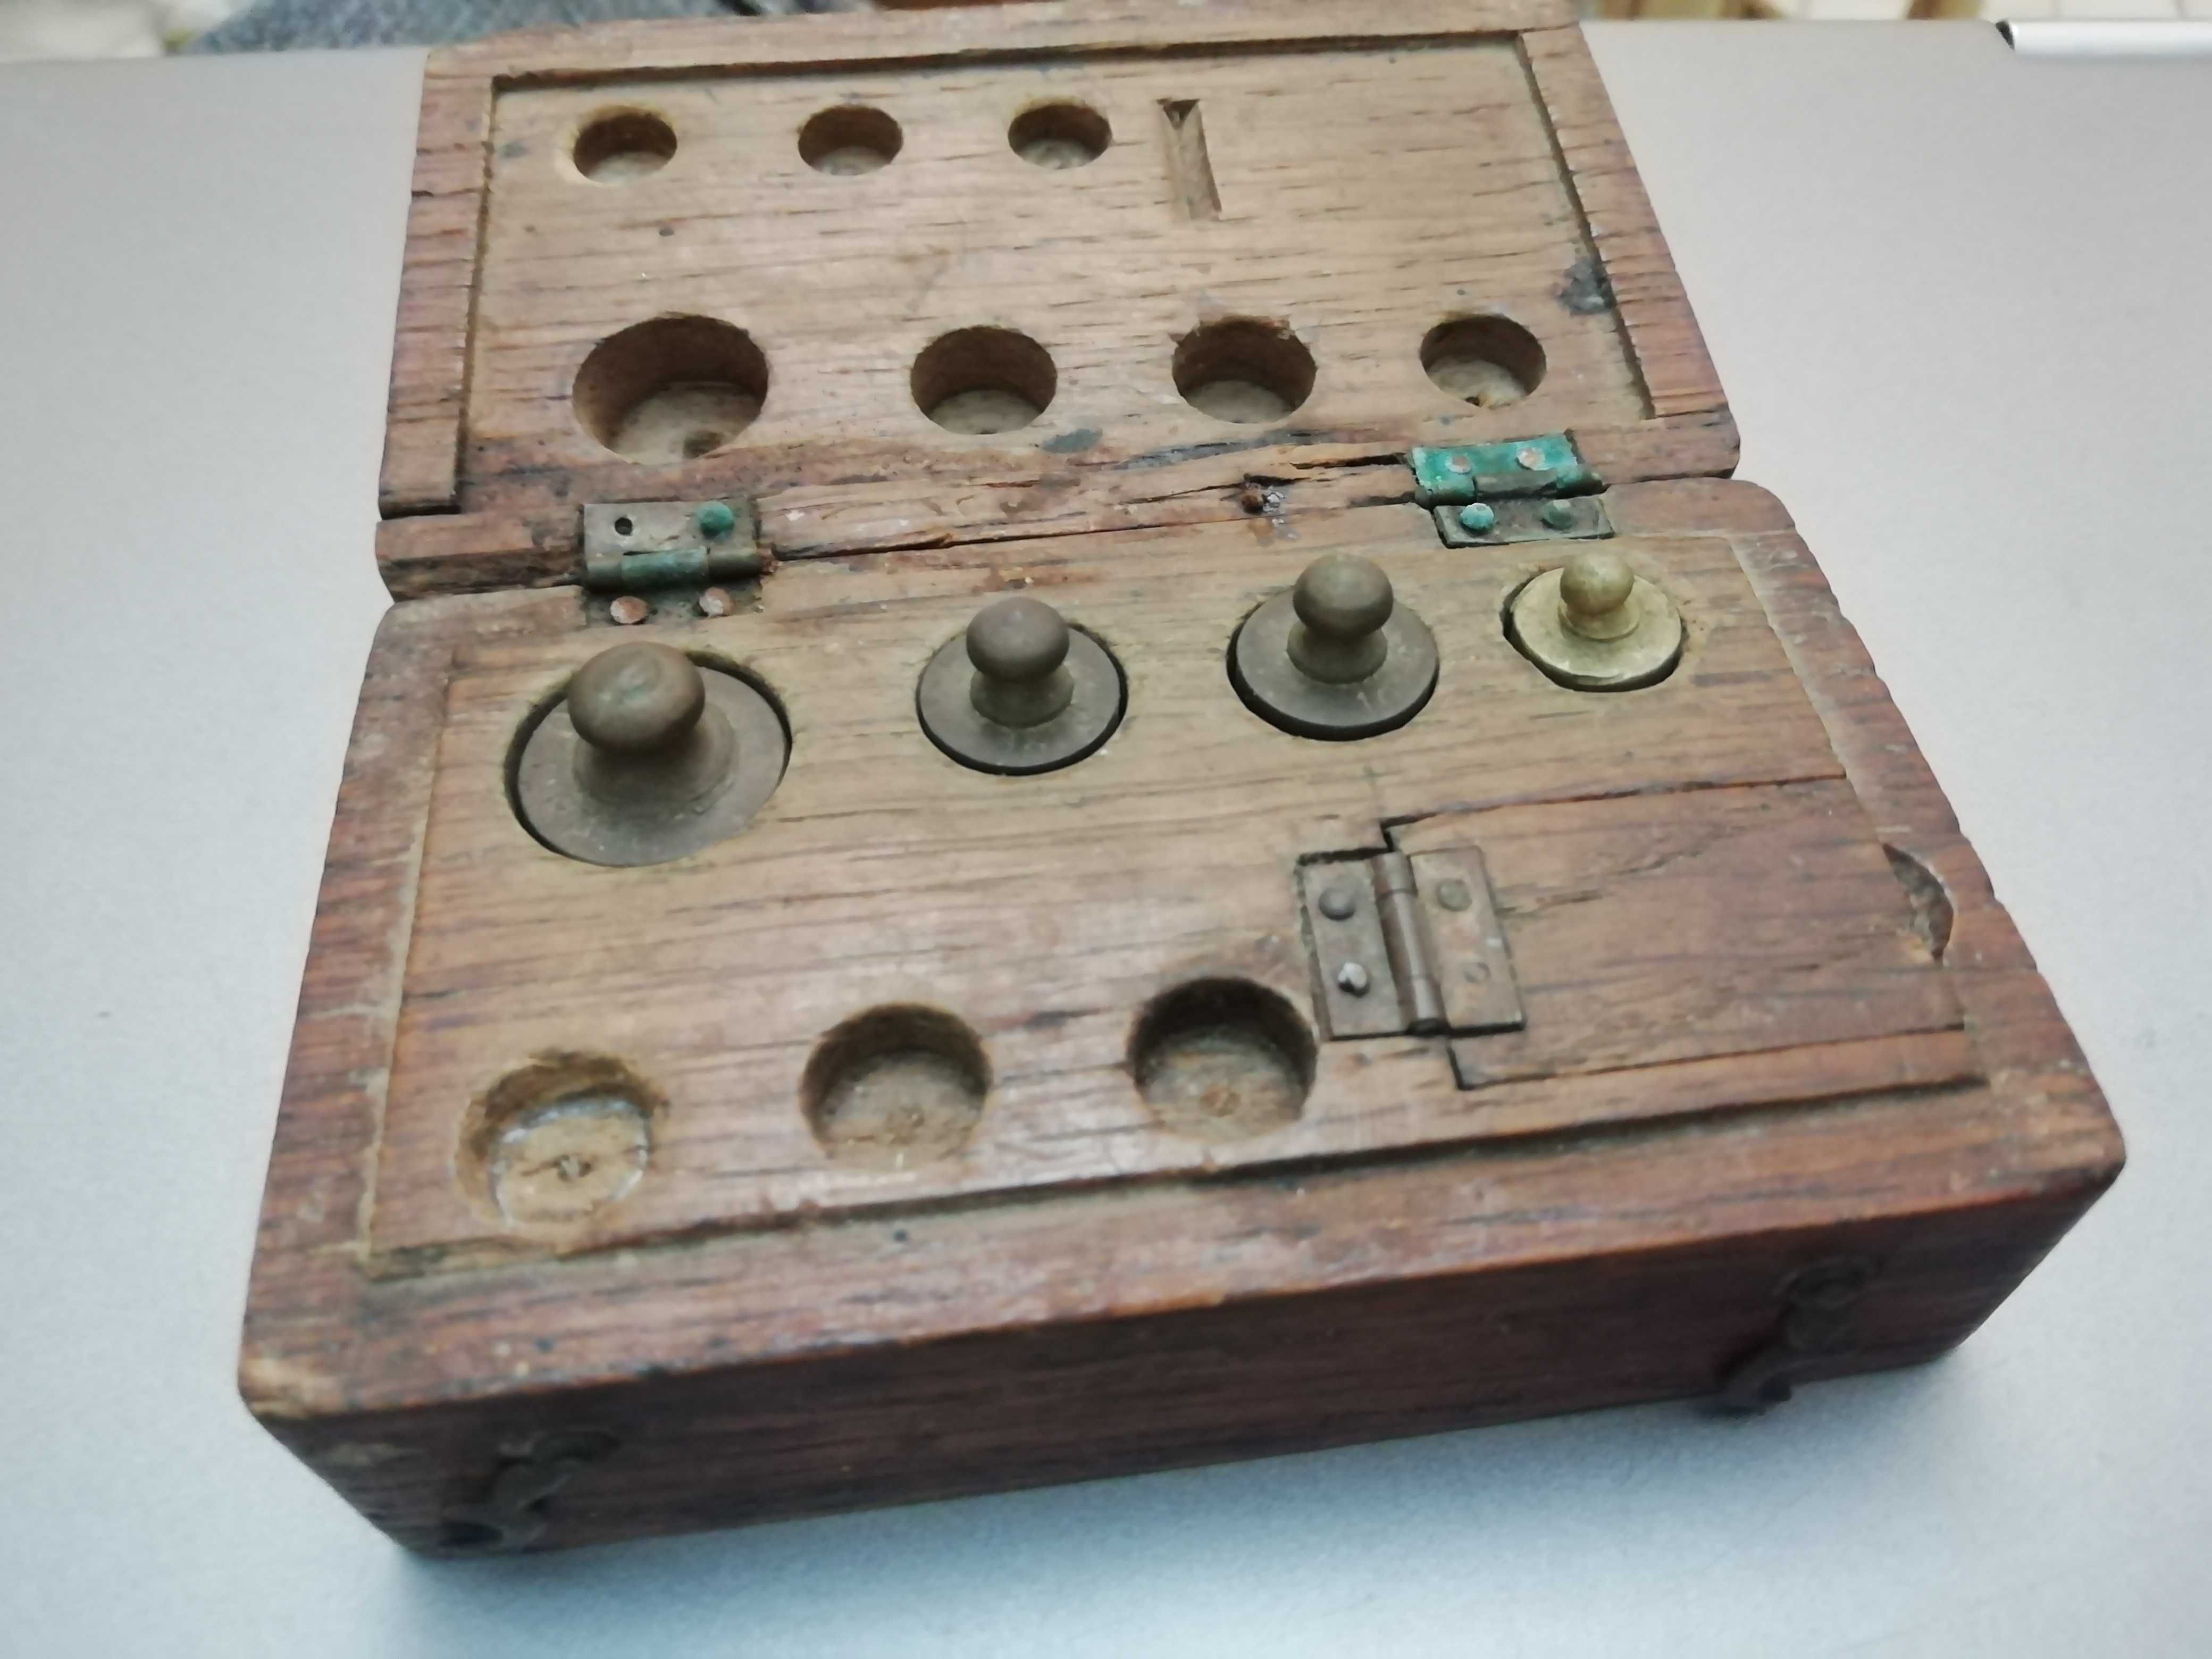 Caixa antiga com cepo de pesos pequenos de precisão